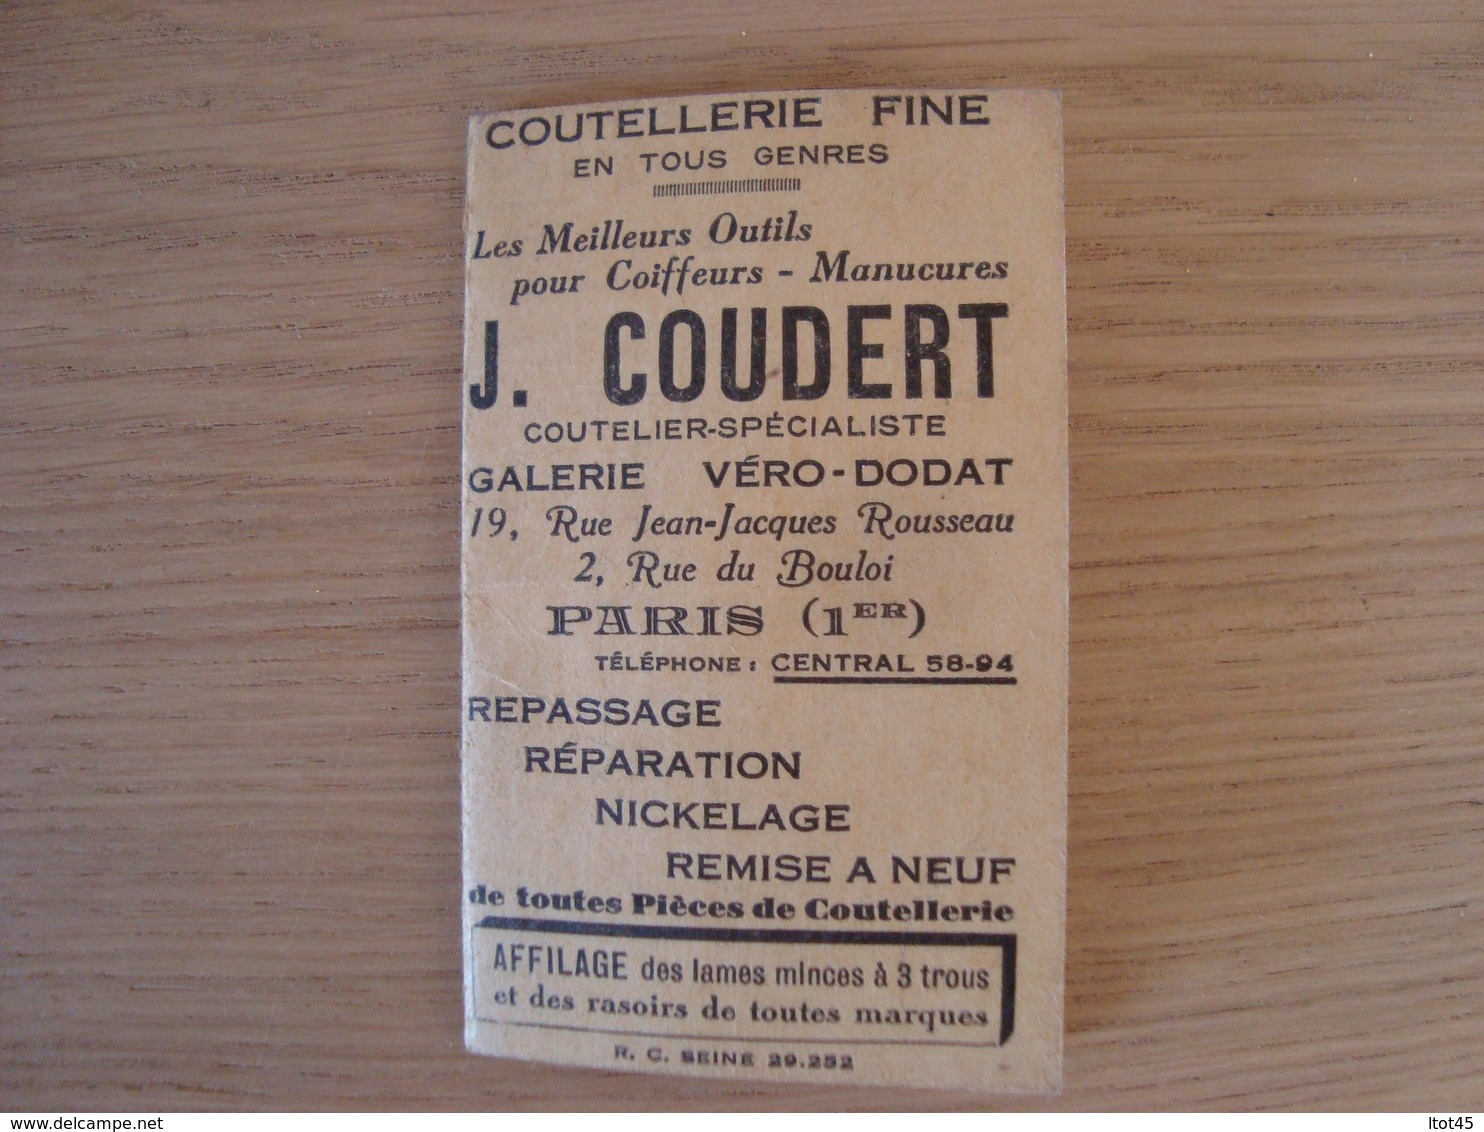 DOCUMENT PUBLICITAIRE J. COUBERT COUTELLERIE PARIS - Advertising